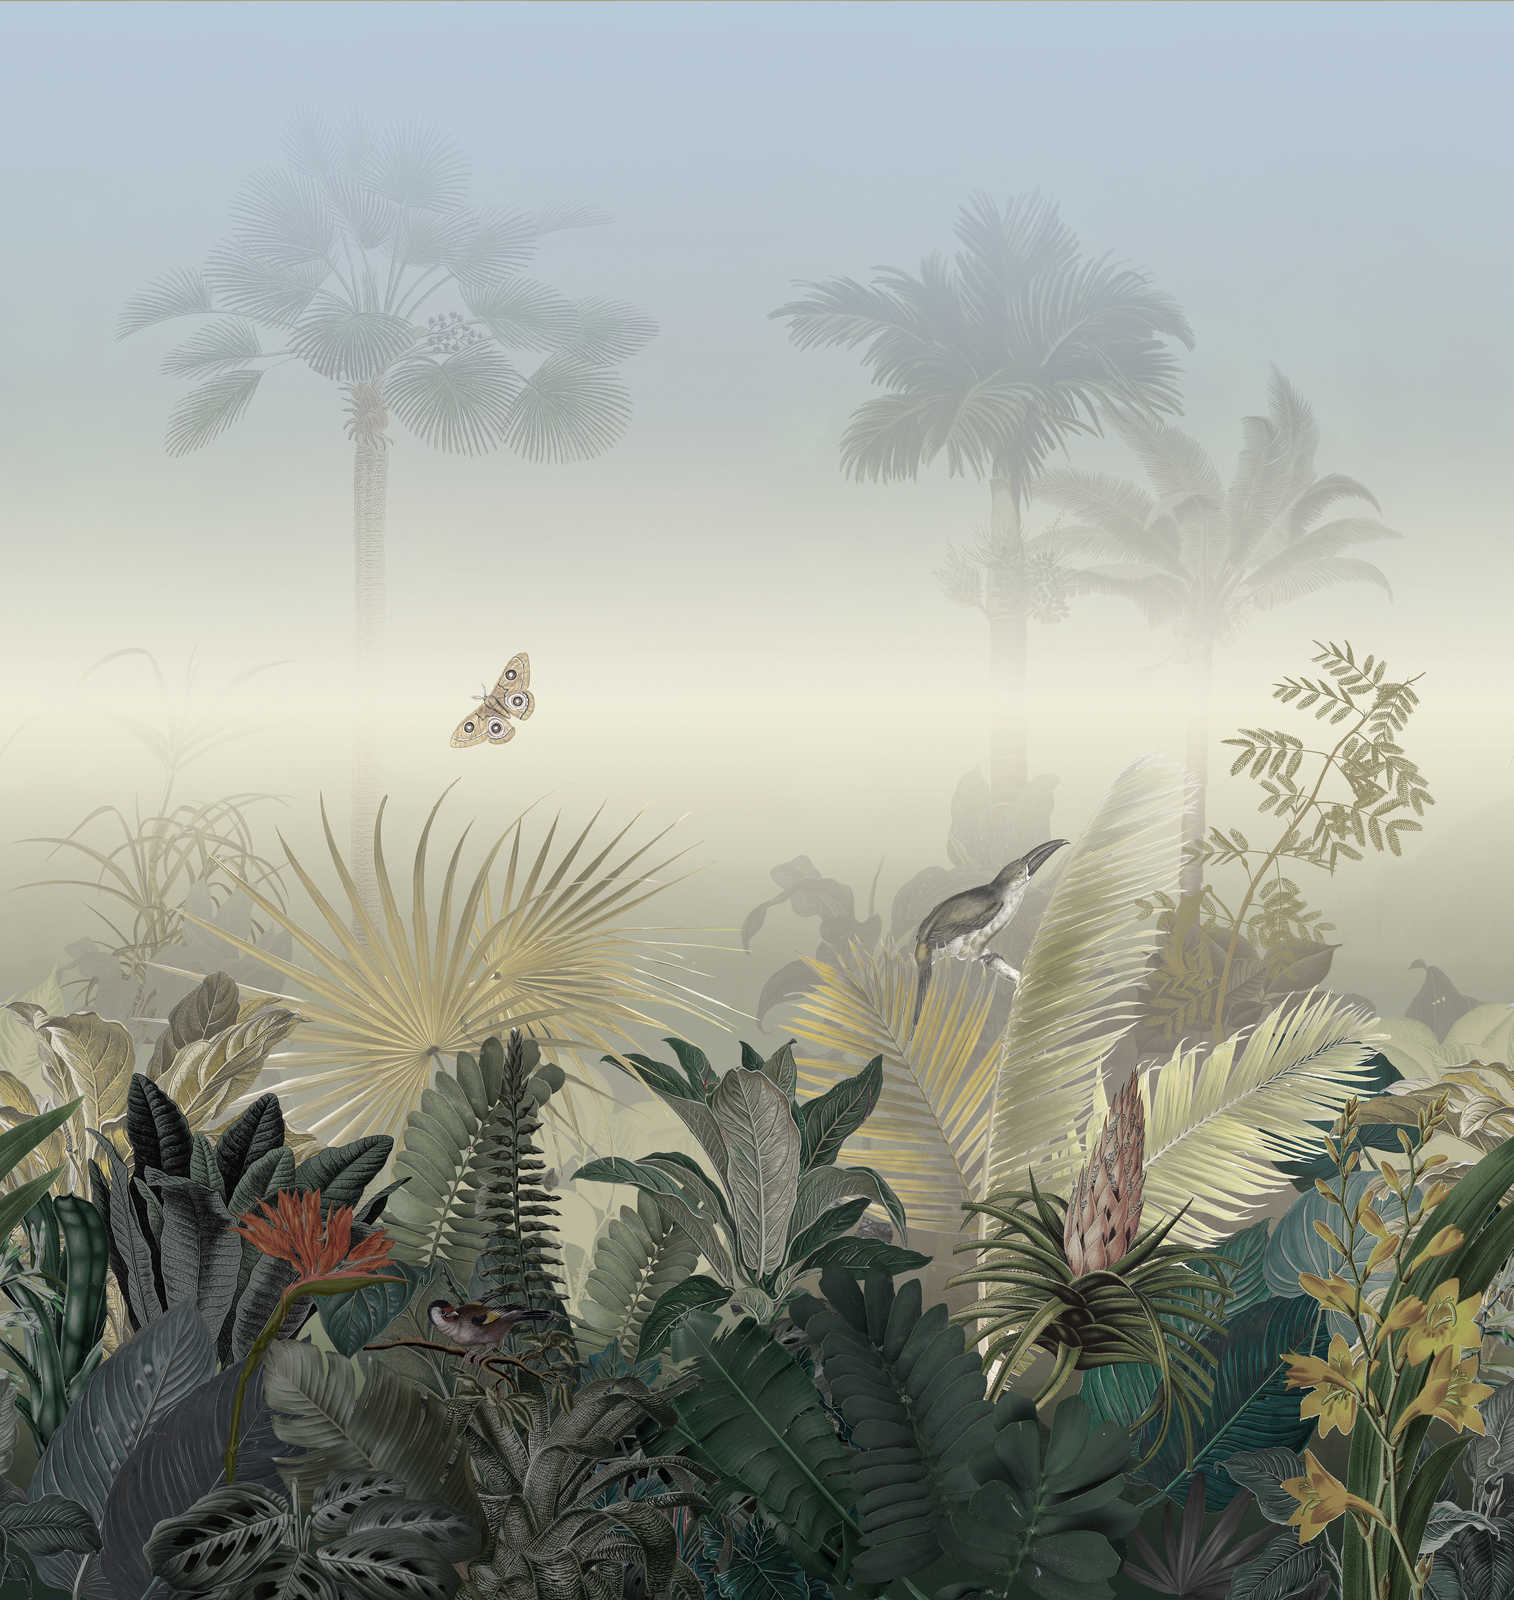             Jungle motief behang met dieren in de mist - kleurrijk, blauw, groen
        